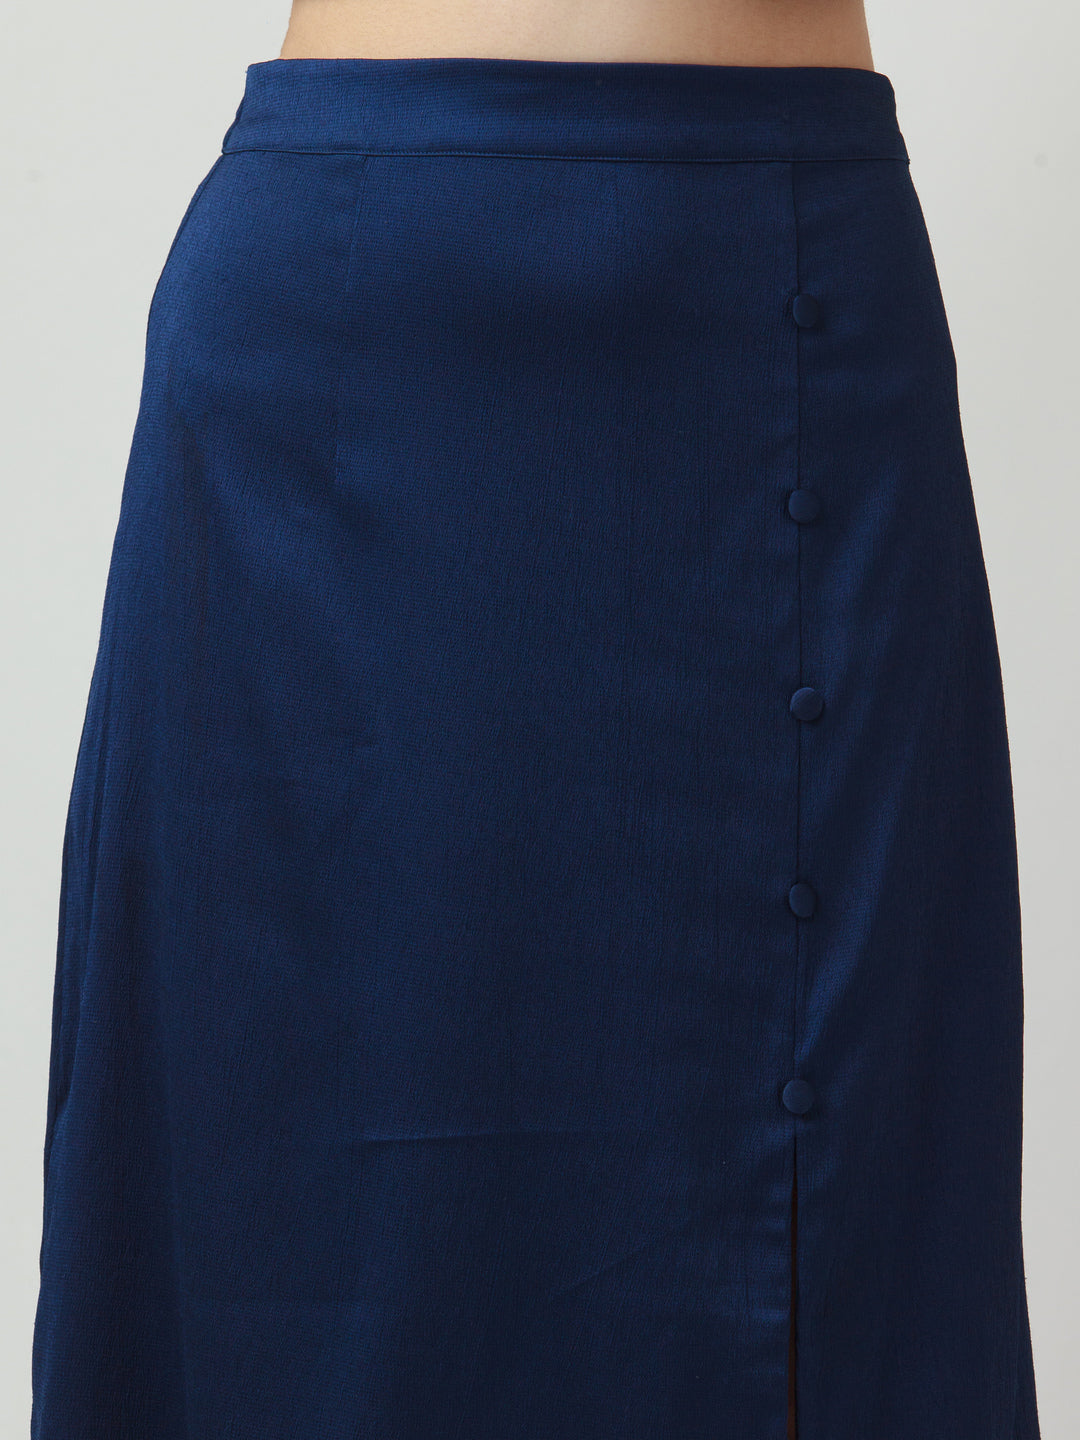 Navy Blue Solid Skirt For Women